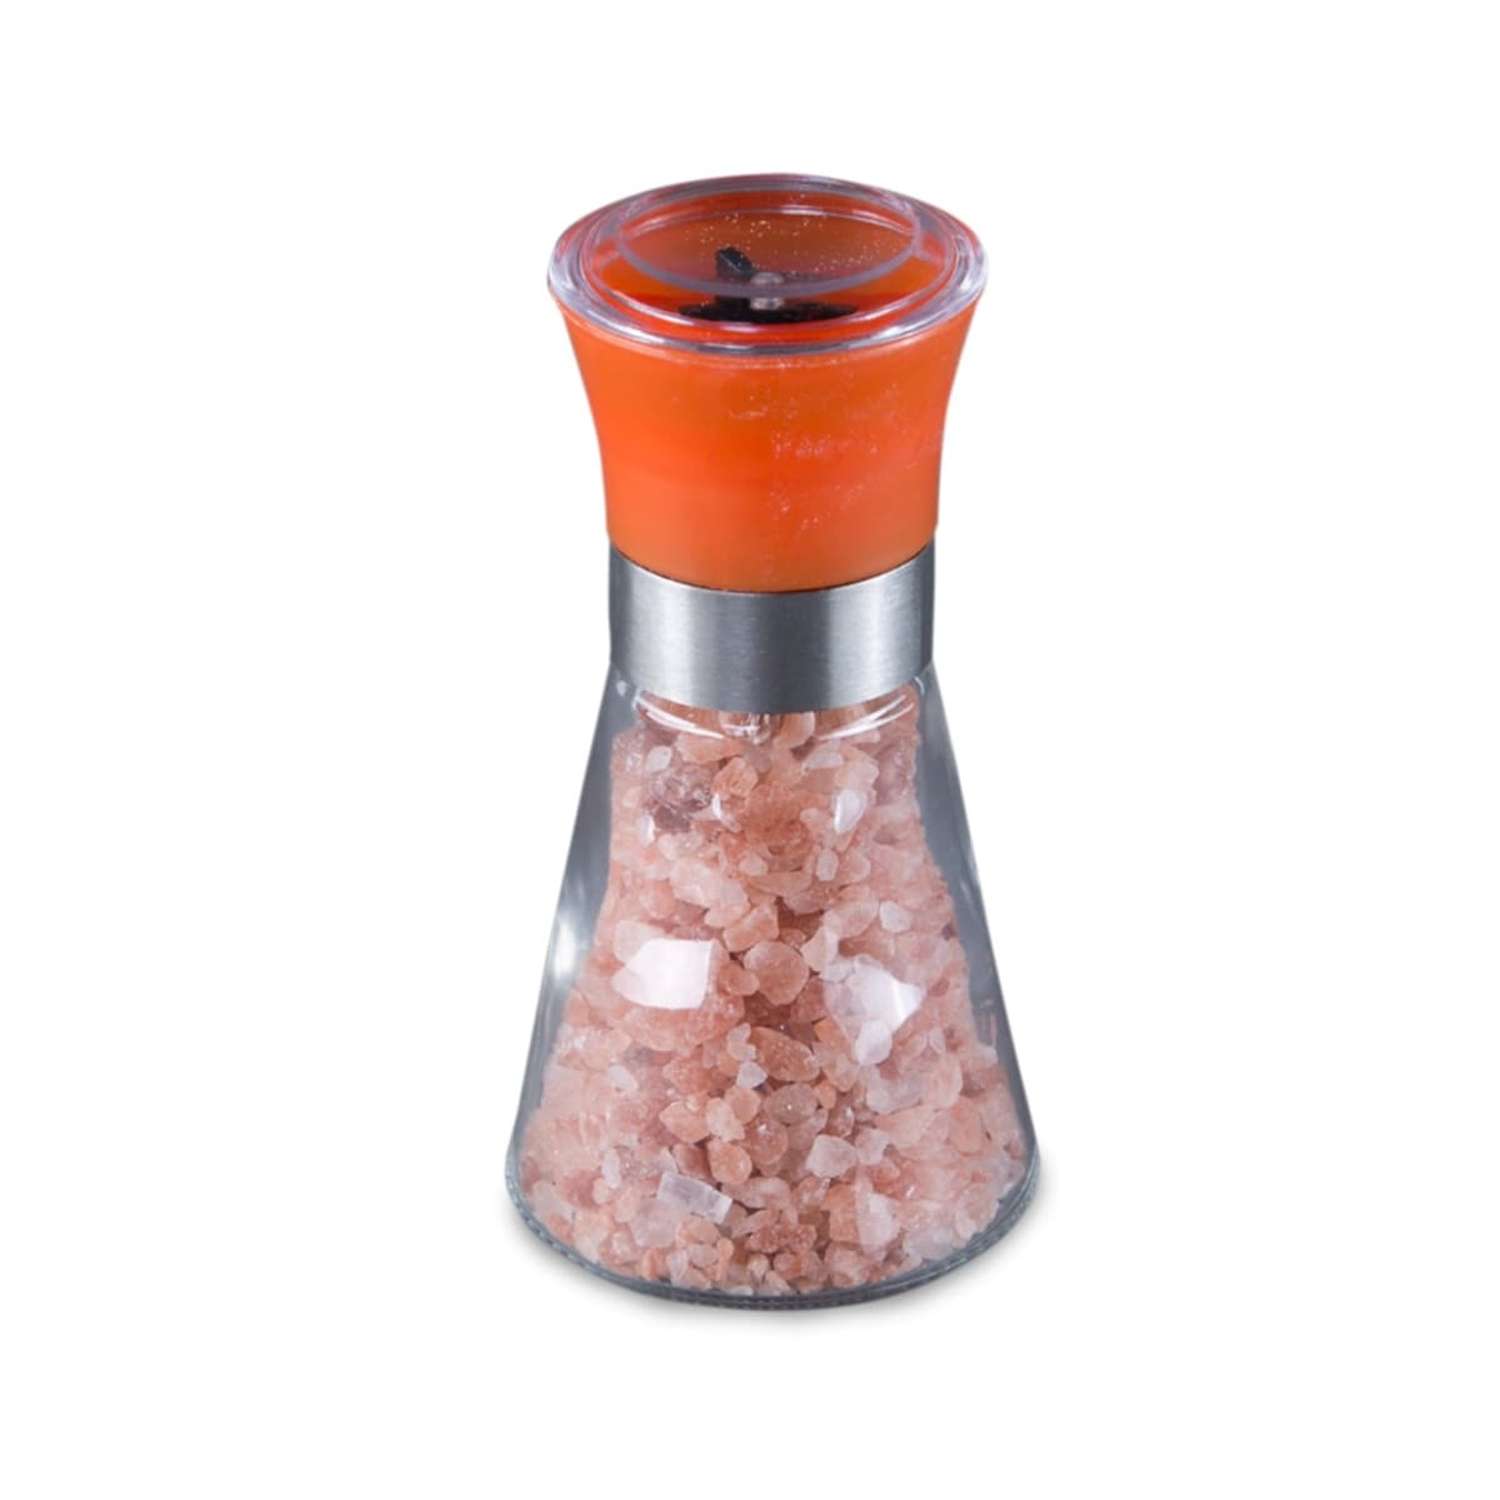 Соль гималайская розовая Wonder Life 2-5мм в стеклянной мельничке с керамическими жерновами 100г цвет оранжевый - фото 1